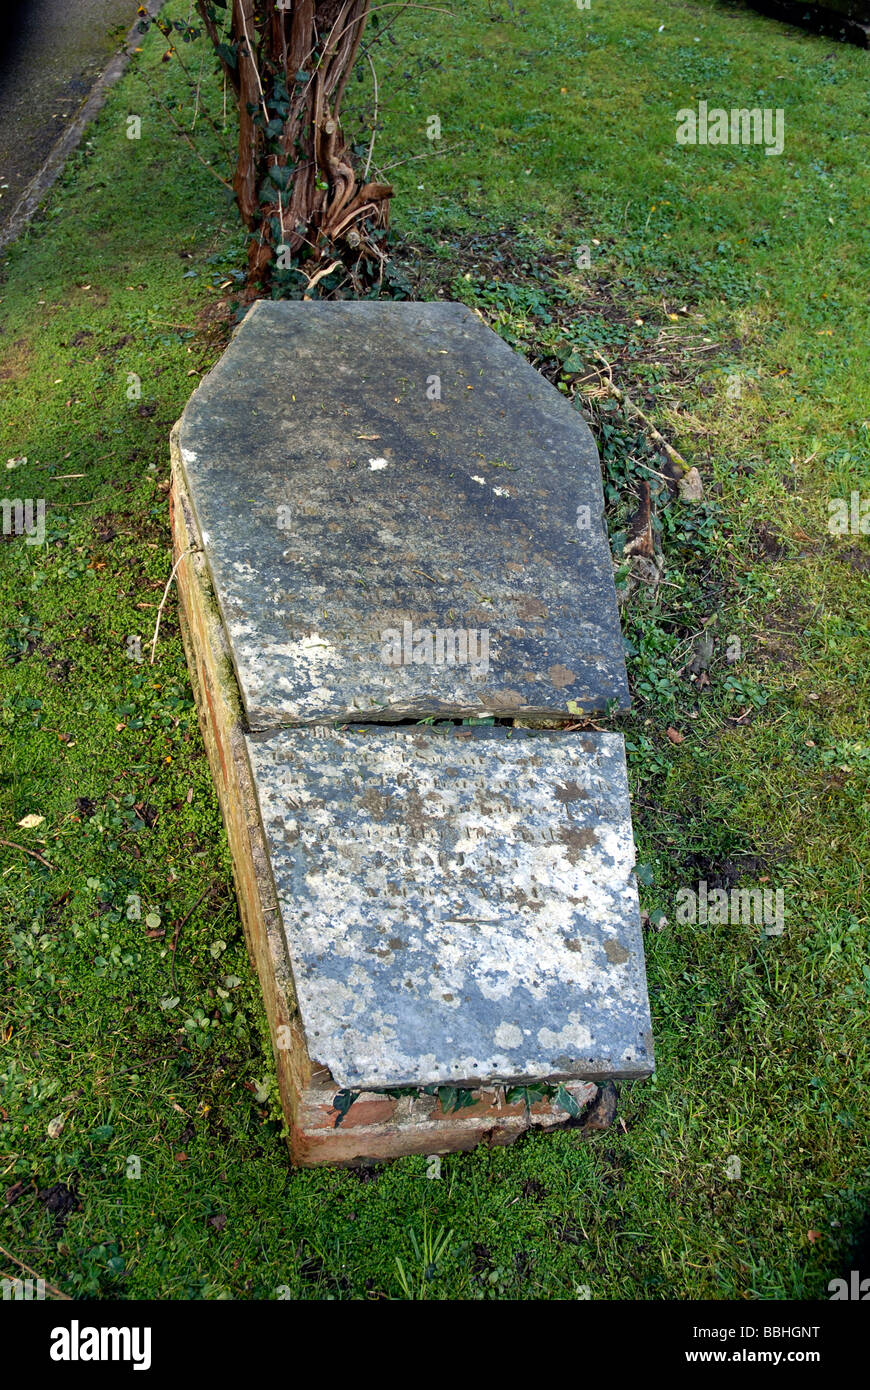 En forme de cercueil tombe, cimetière de Padstow, Cornwall, Angleterre, Royaume-Uni Banque D'Images